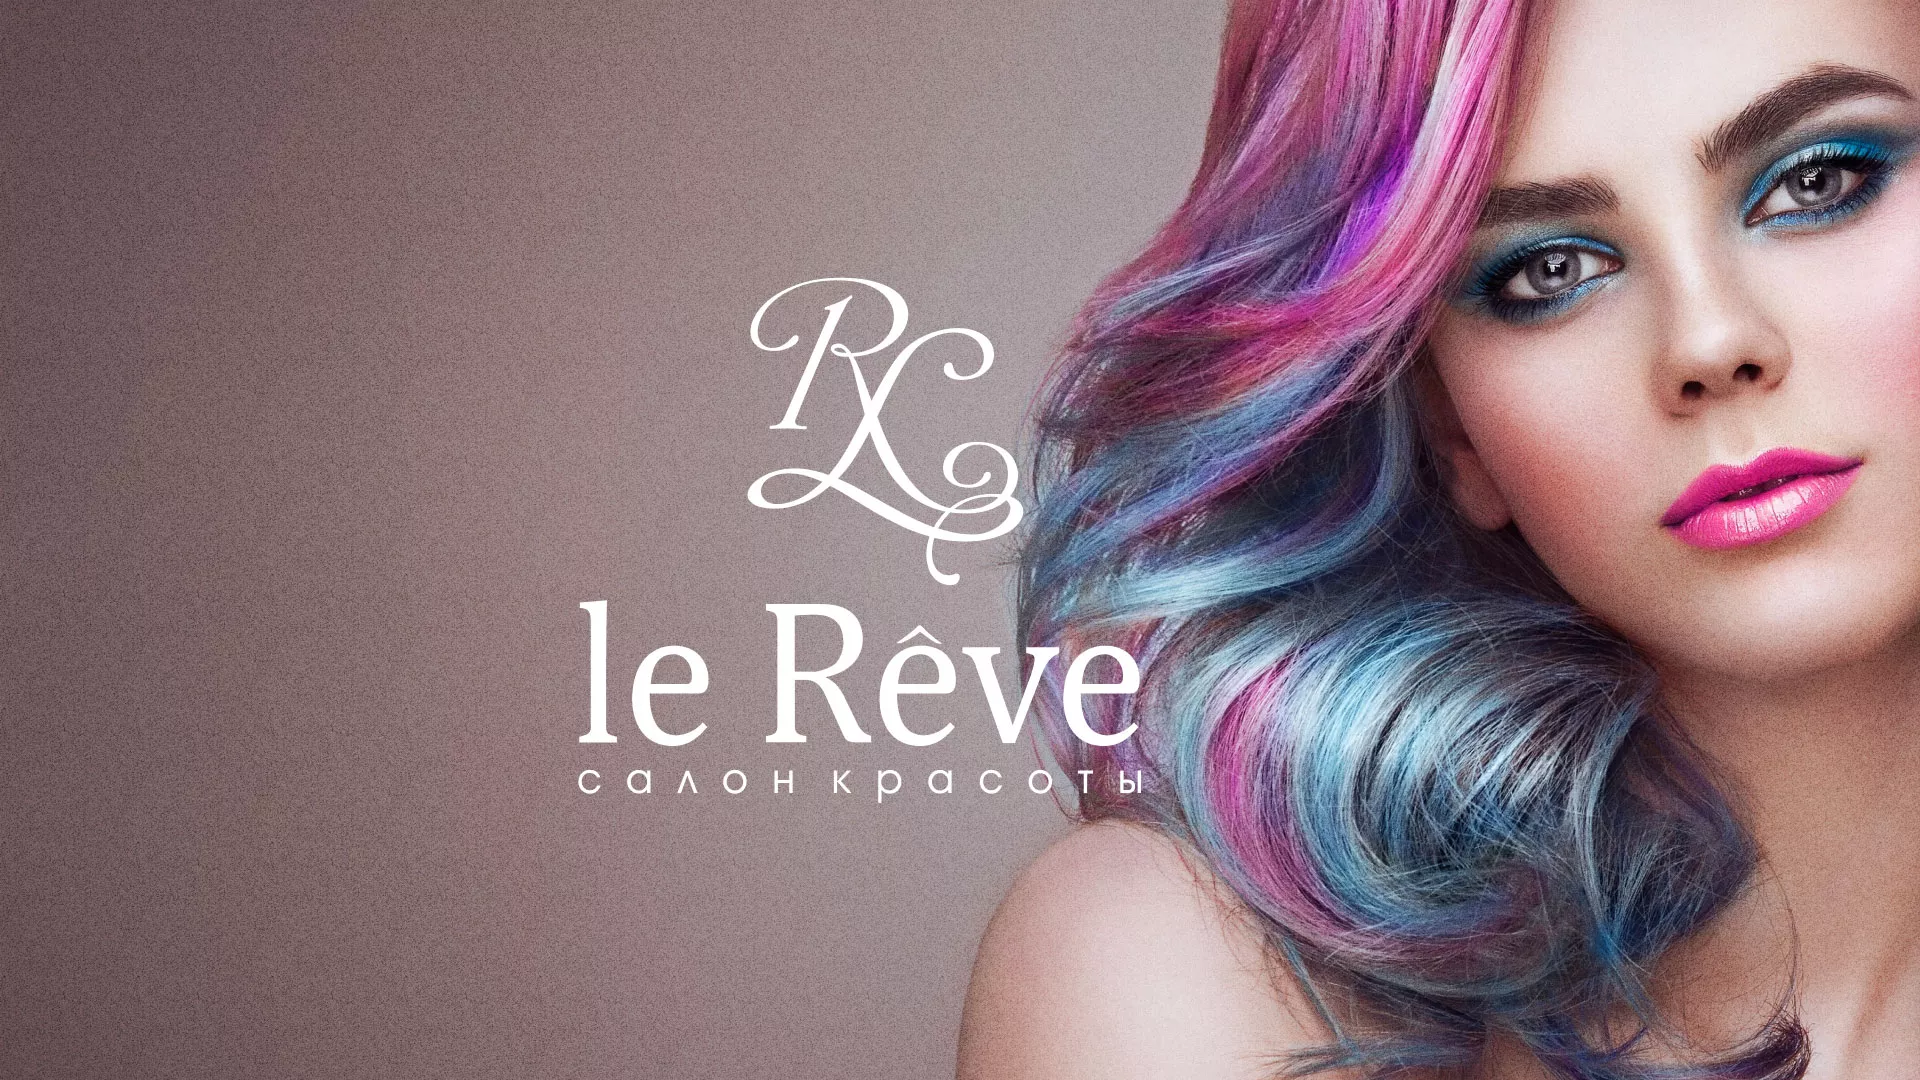 Создание сайта для салона красоты «Le Reve» в Ступино